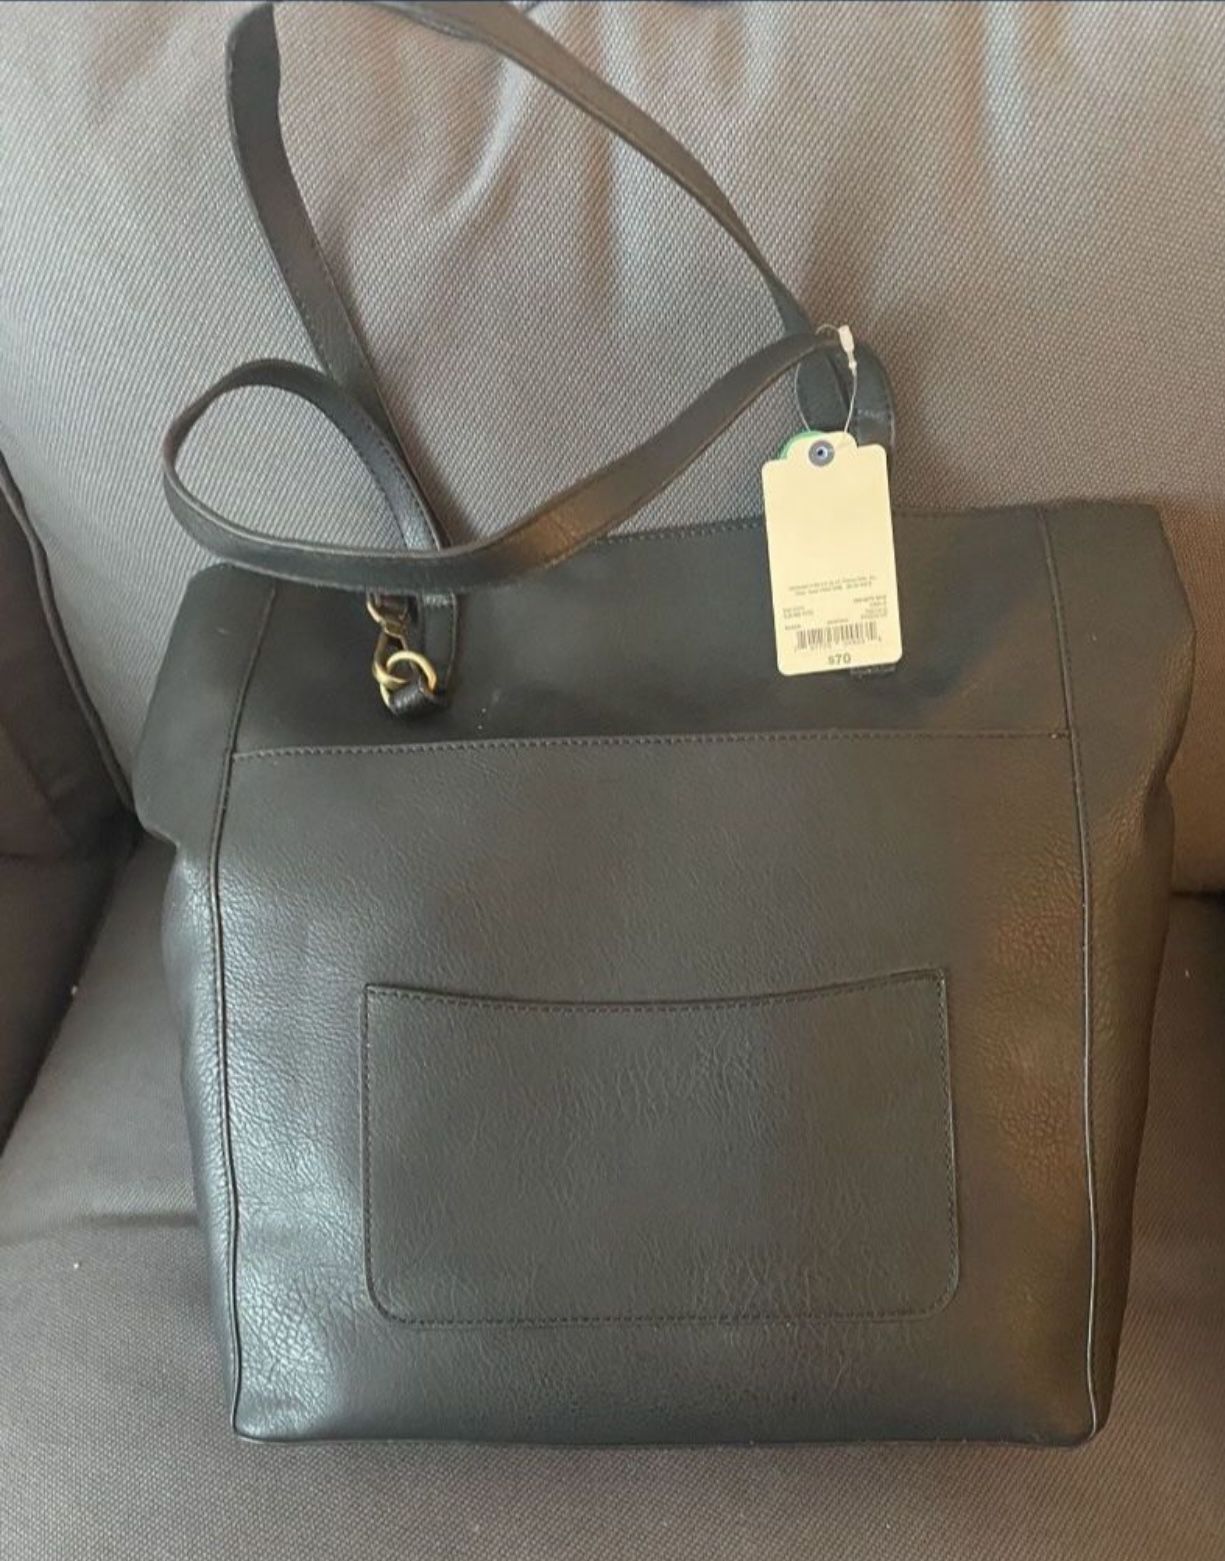 St. John Bay's Tote Bag Black- Brand New